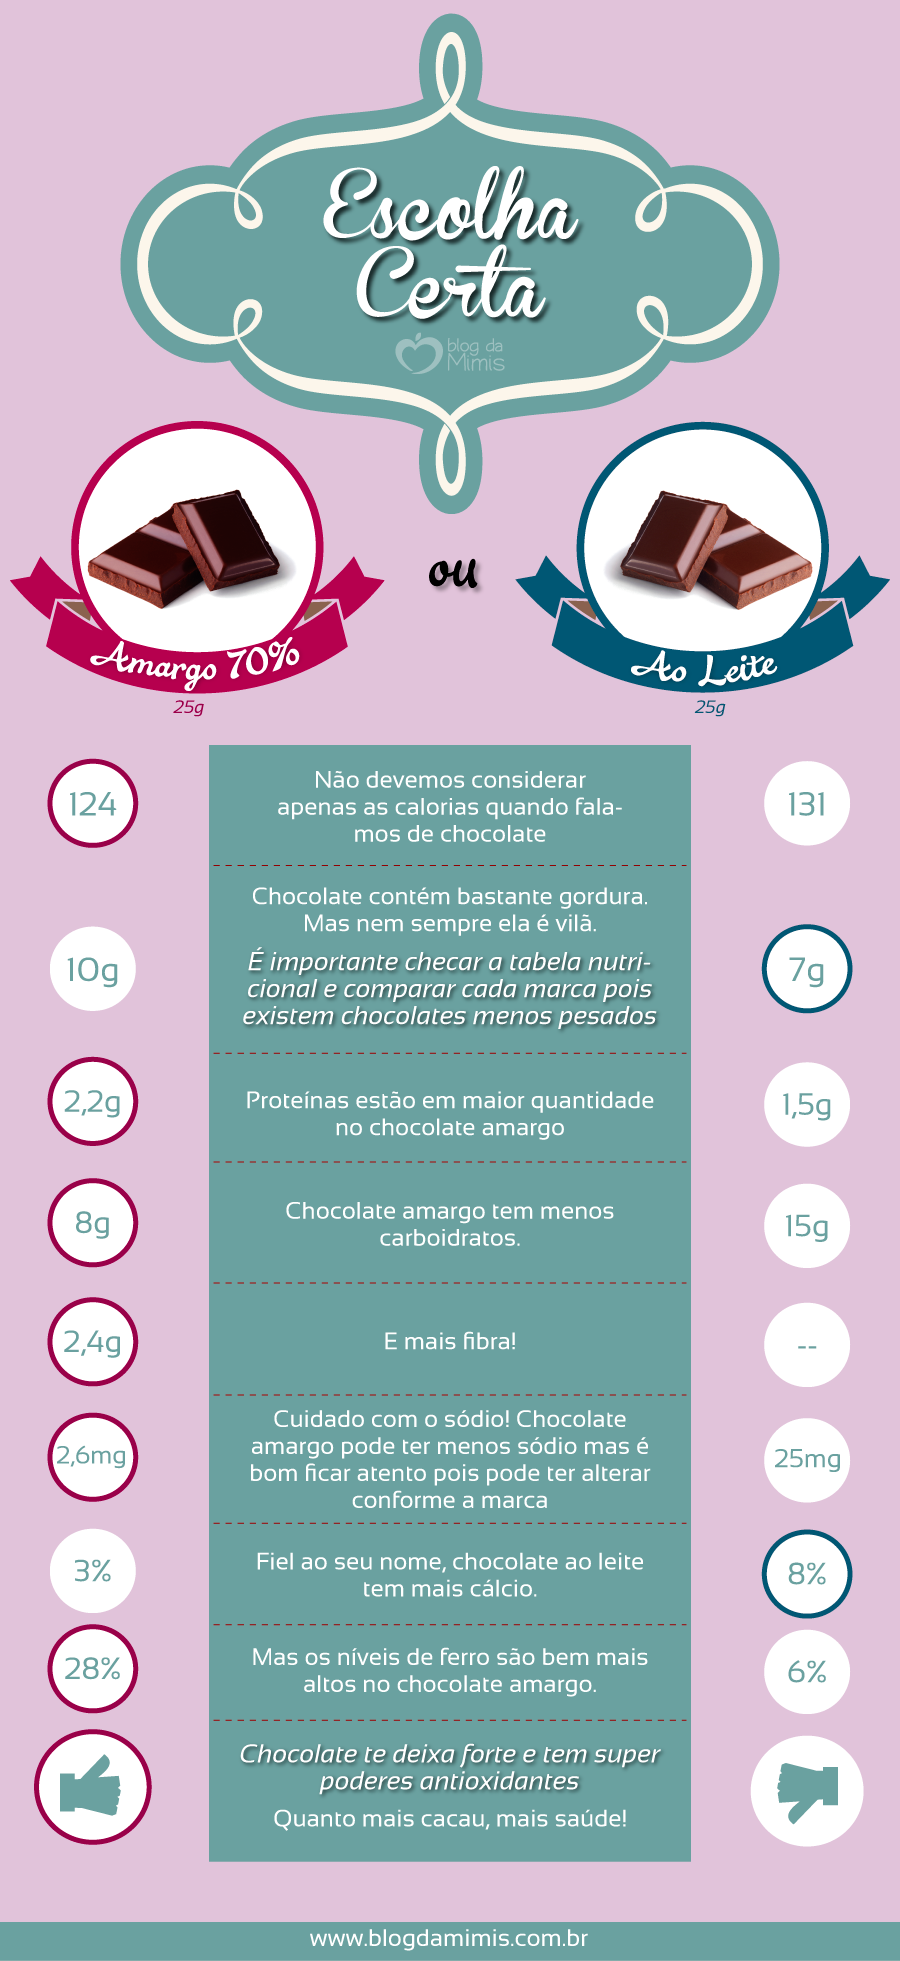 2015-03-30-Escolha-certa-Chocolate-amargo-ou-ao-leite